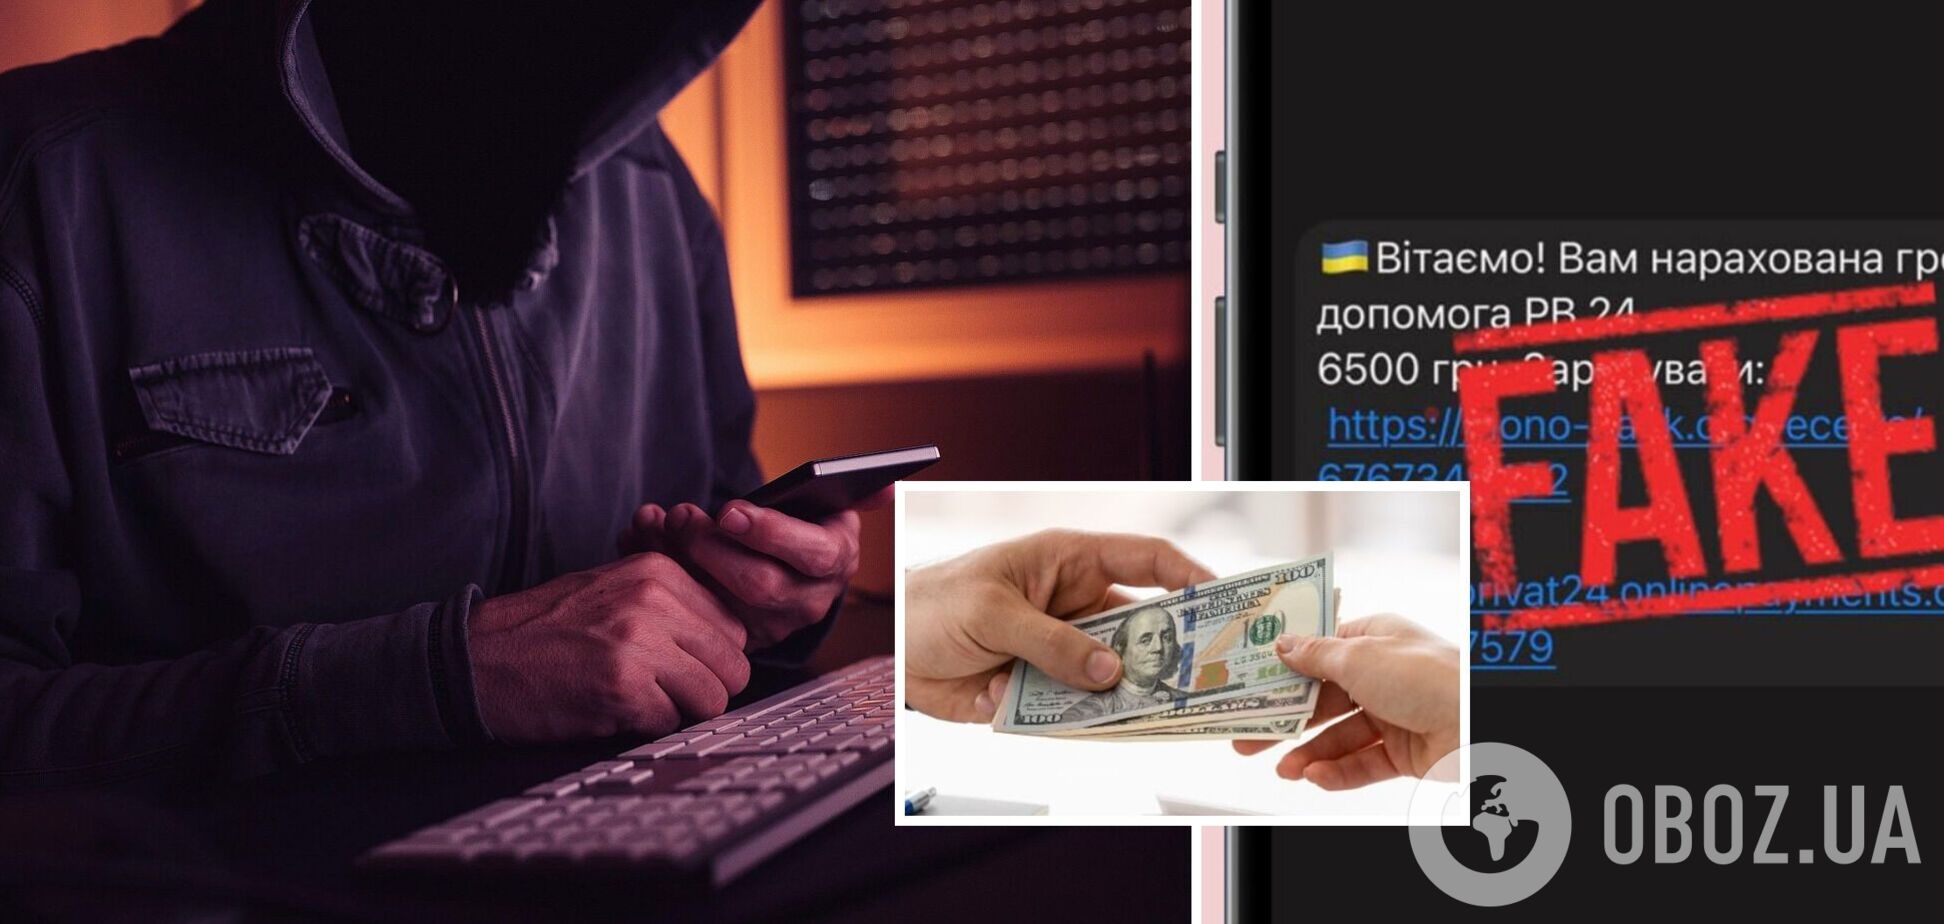 Эксперт рассказала о распространенных мошеннических схемах в Украине